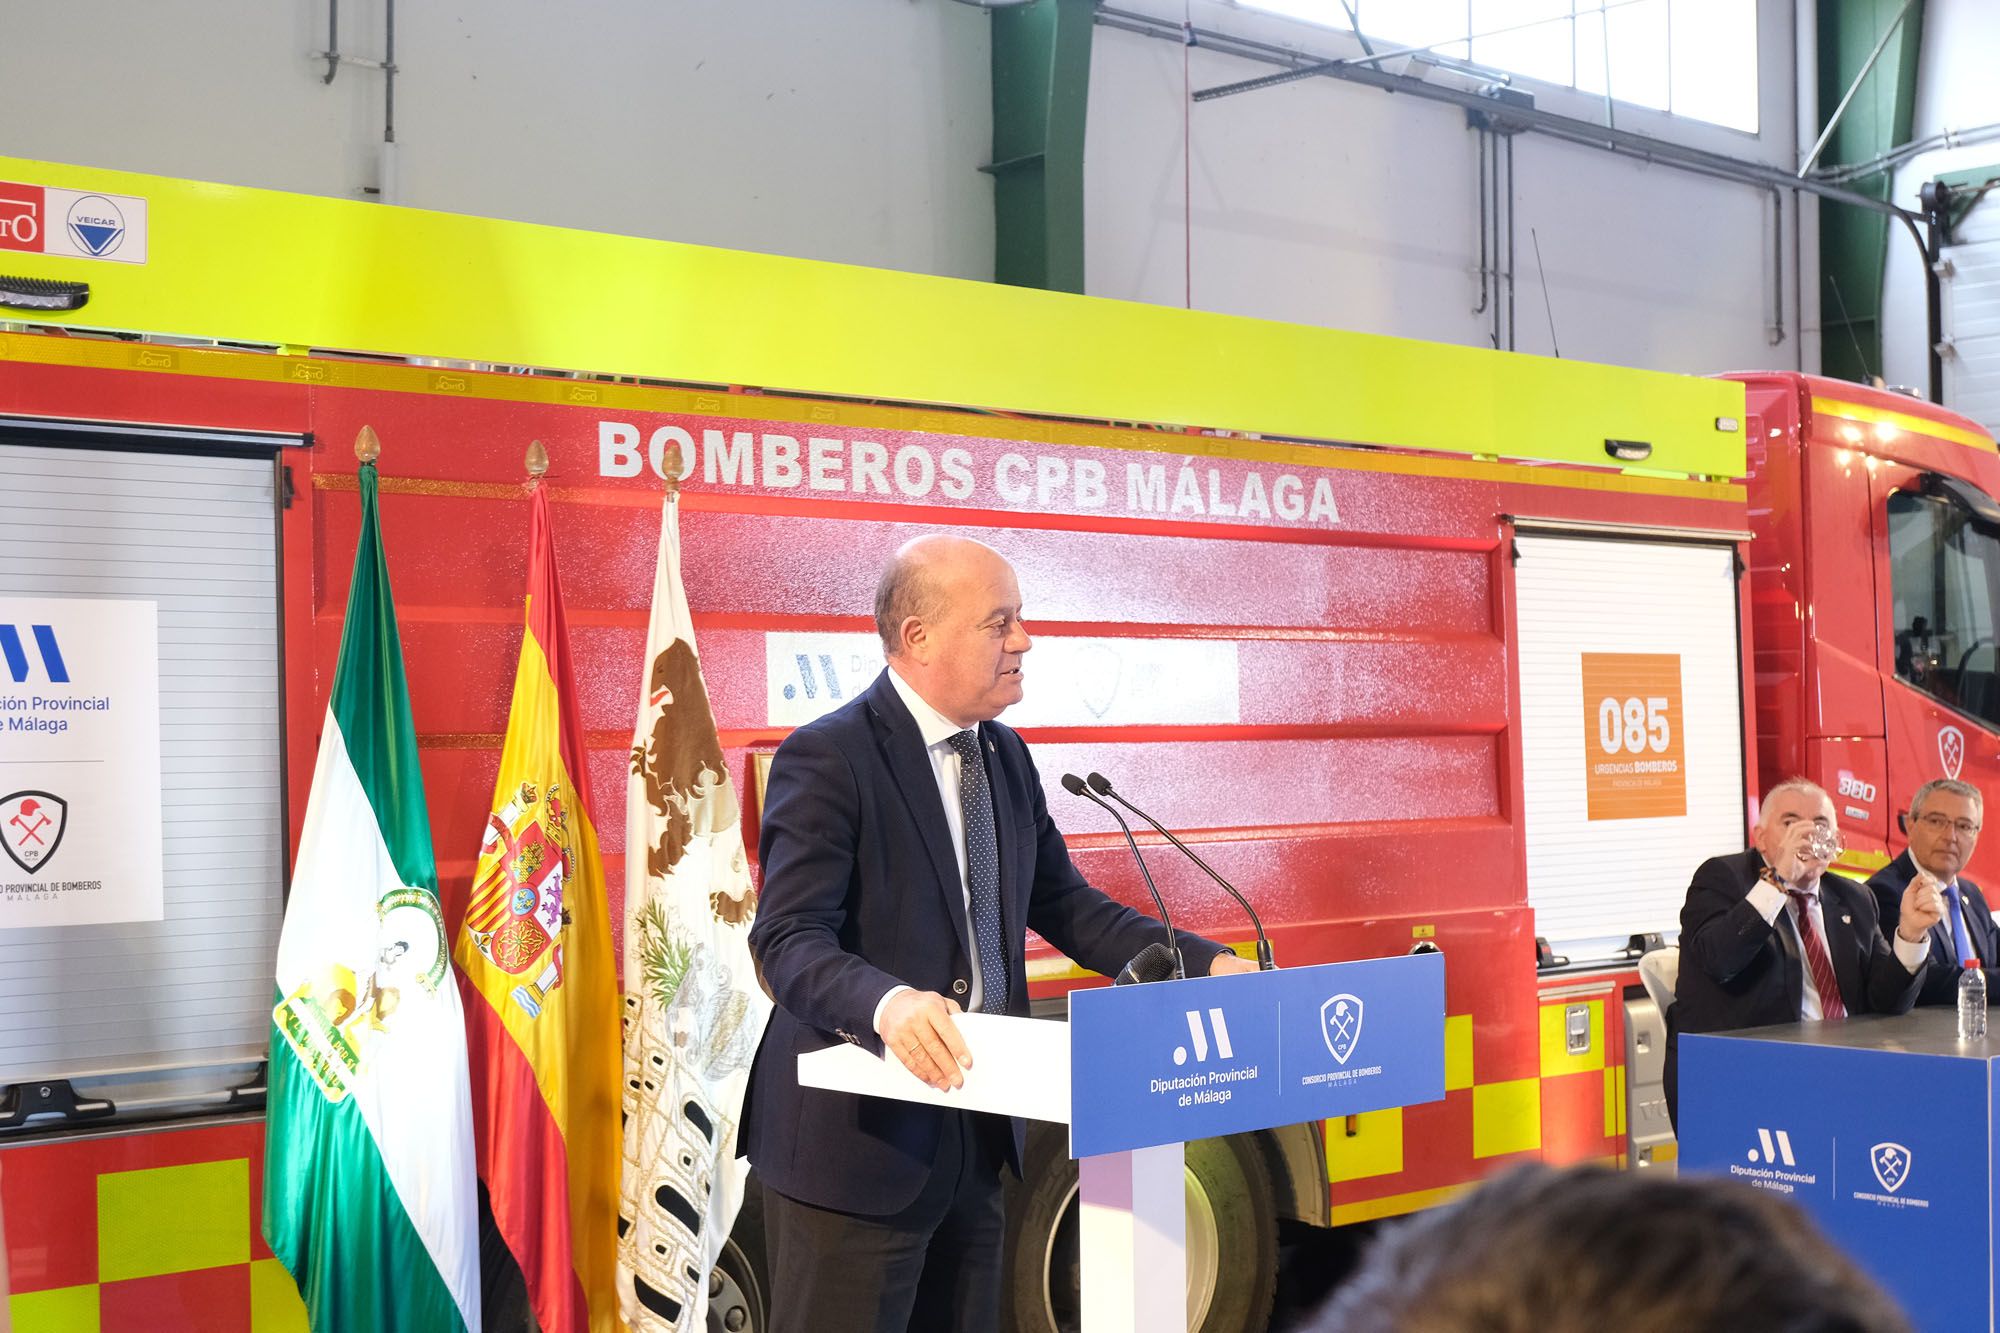 El Consorcio Provincial de Bomberos (CPB) de Málaga celebra el día de su patrón, San Juan de Dios, en el parque de bomberos de Antequera.